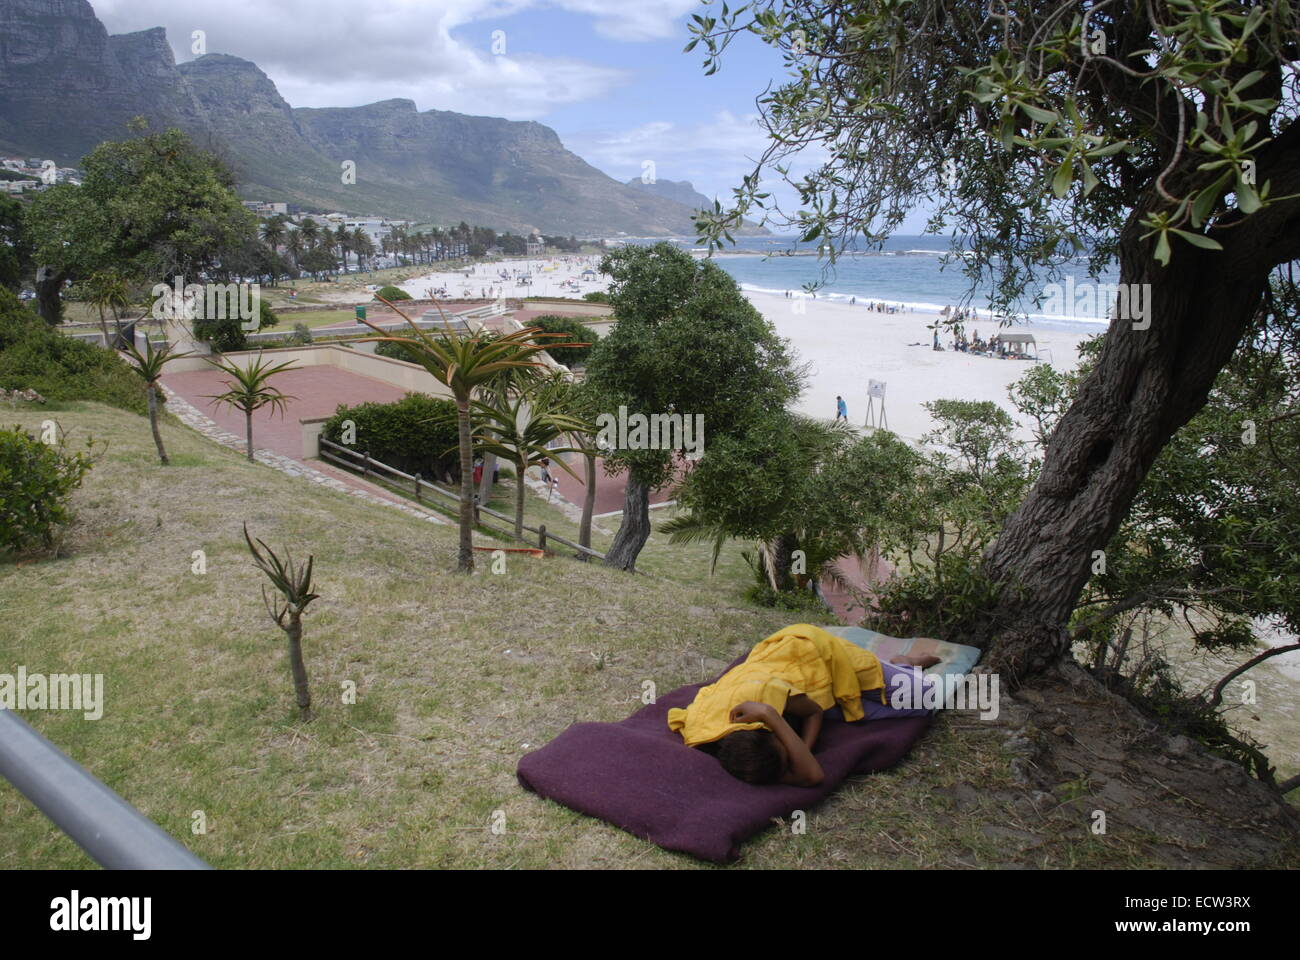 Ein Obdachloser schläft unter einem Baum in der Nähe von Camps Bay Beach in Kapstadt, Südafrika. Bild von: Adam Alexander/Alamy Stockfoto